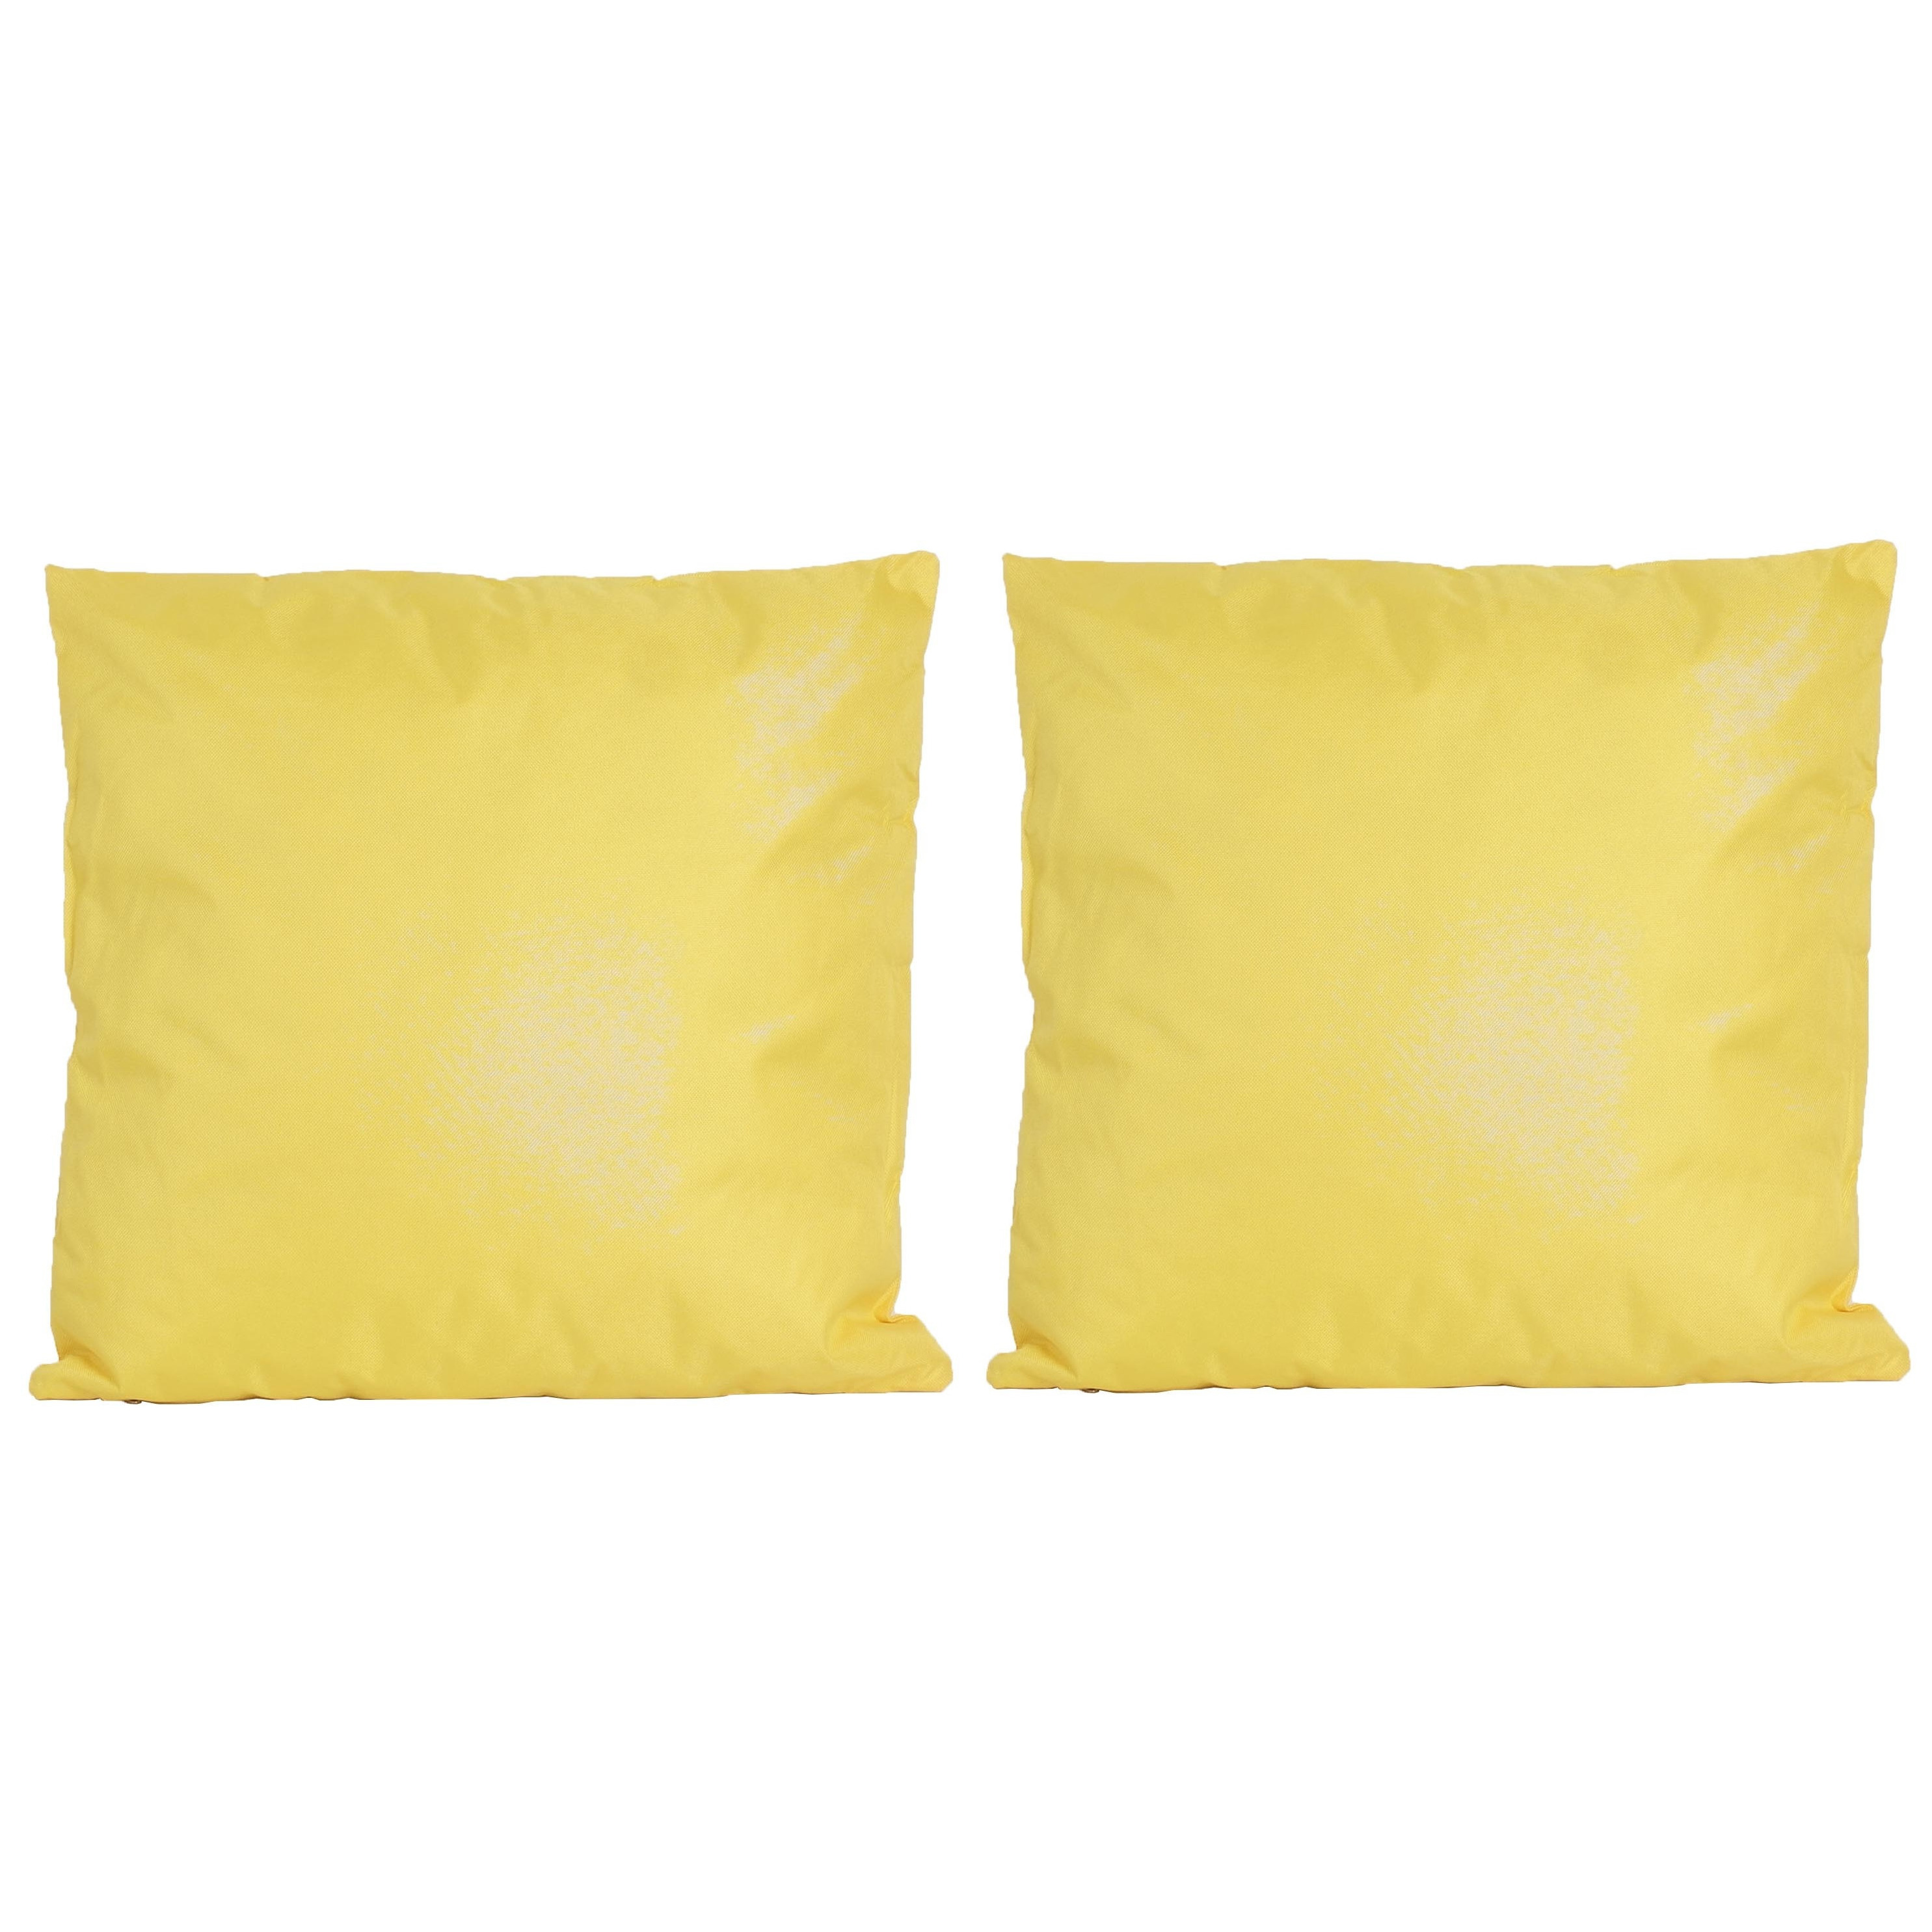 8x Bank-sier kussens voor binnen en buiten in de kleur geel 45 x 45 cm